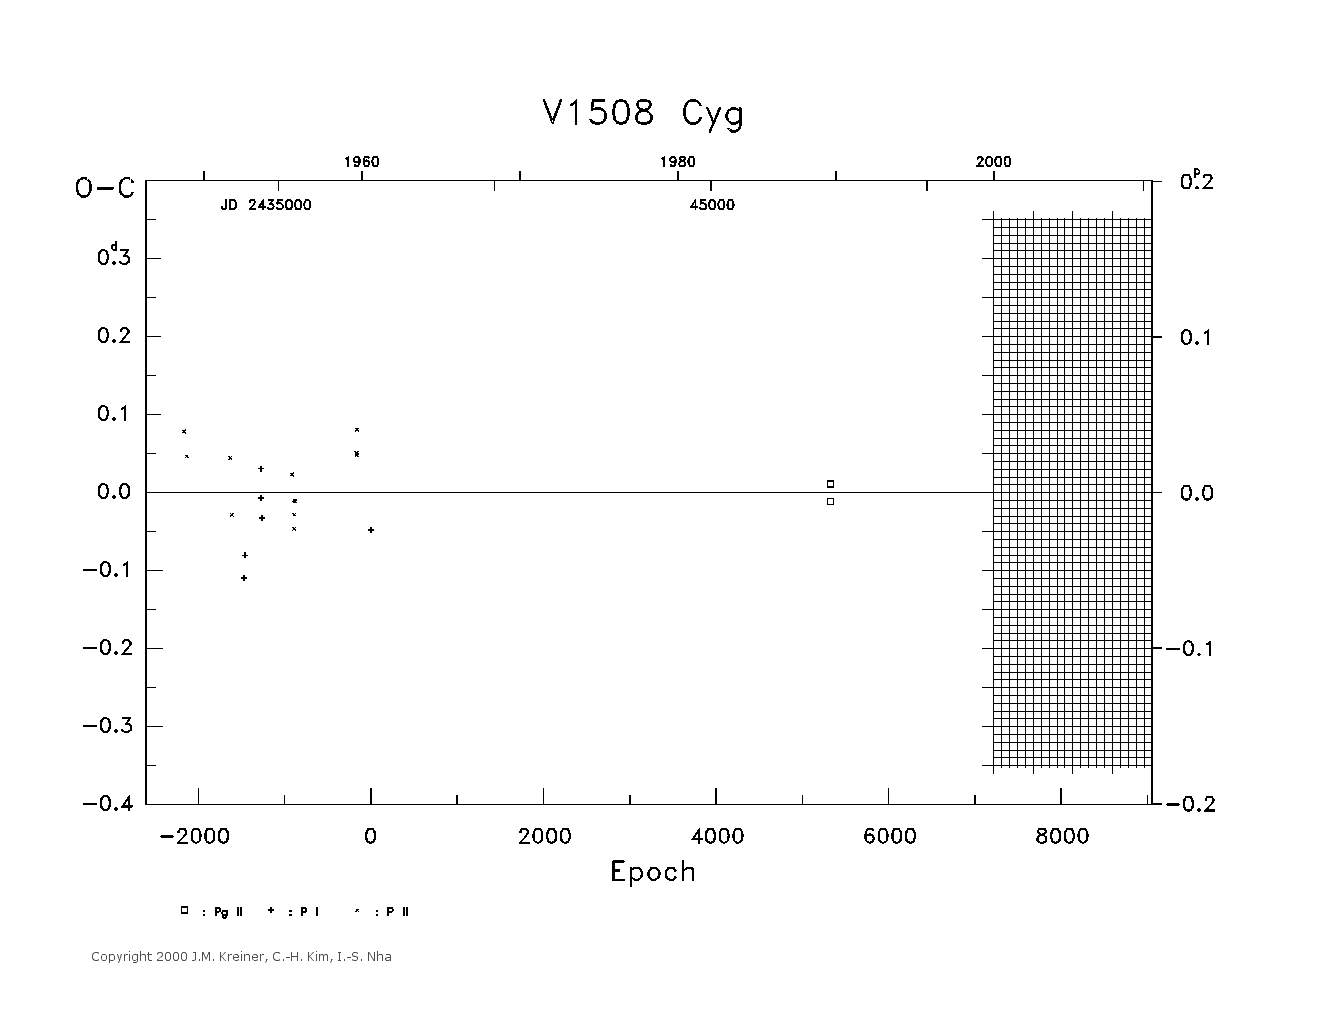 [IMAGE: large V1508 CYG O-C diagram]